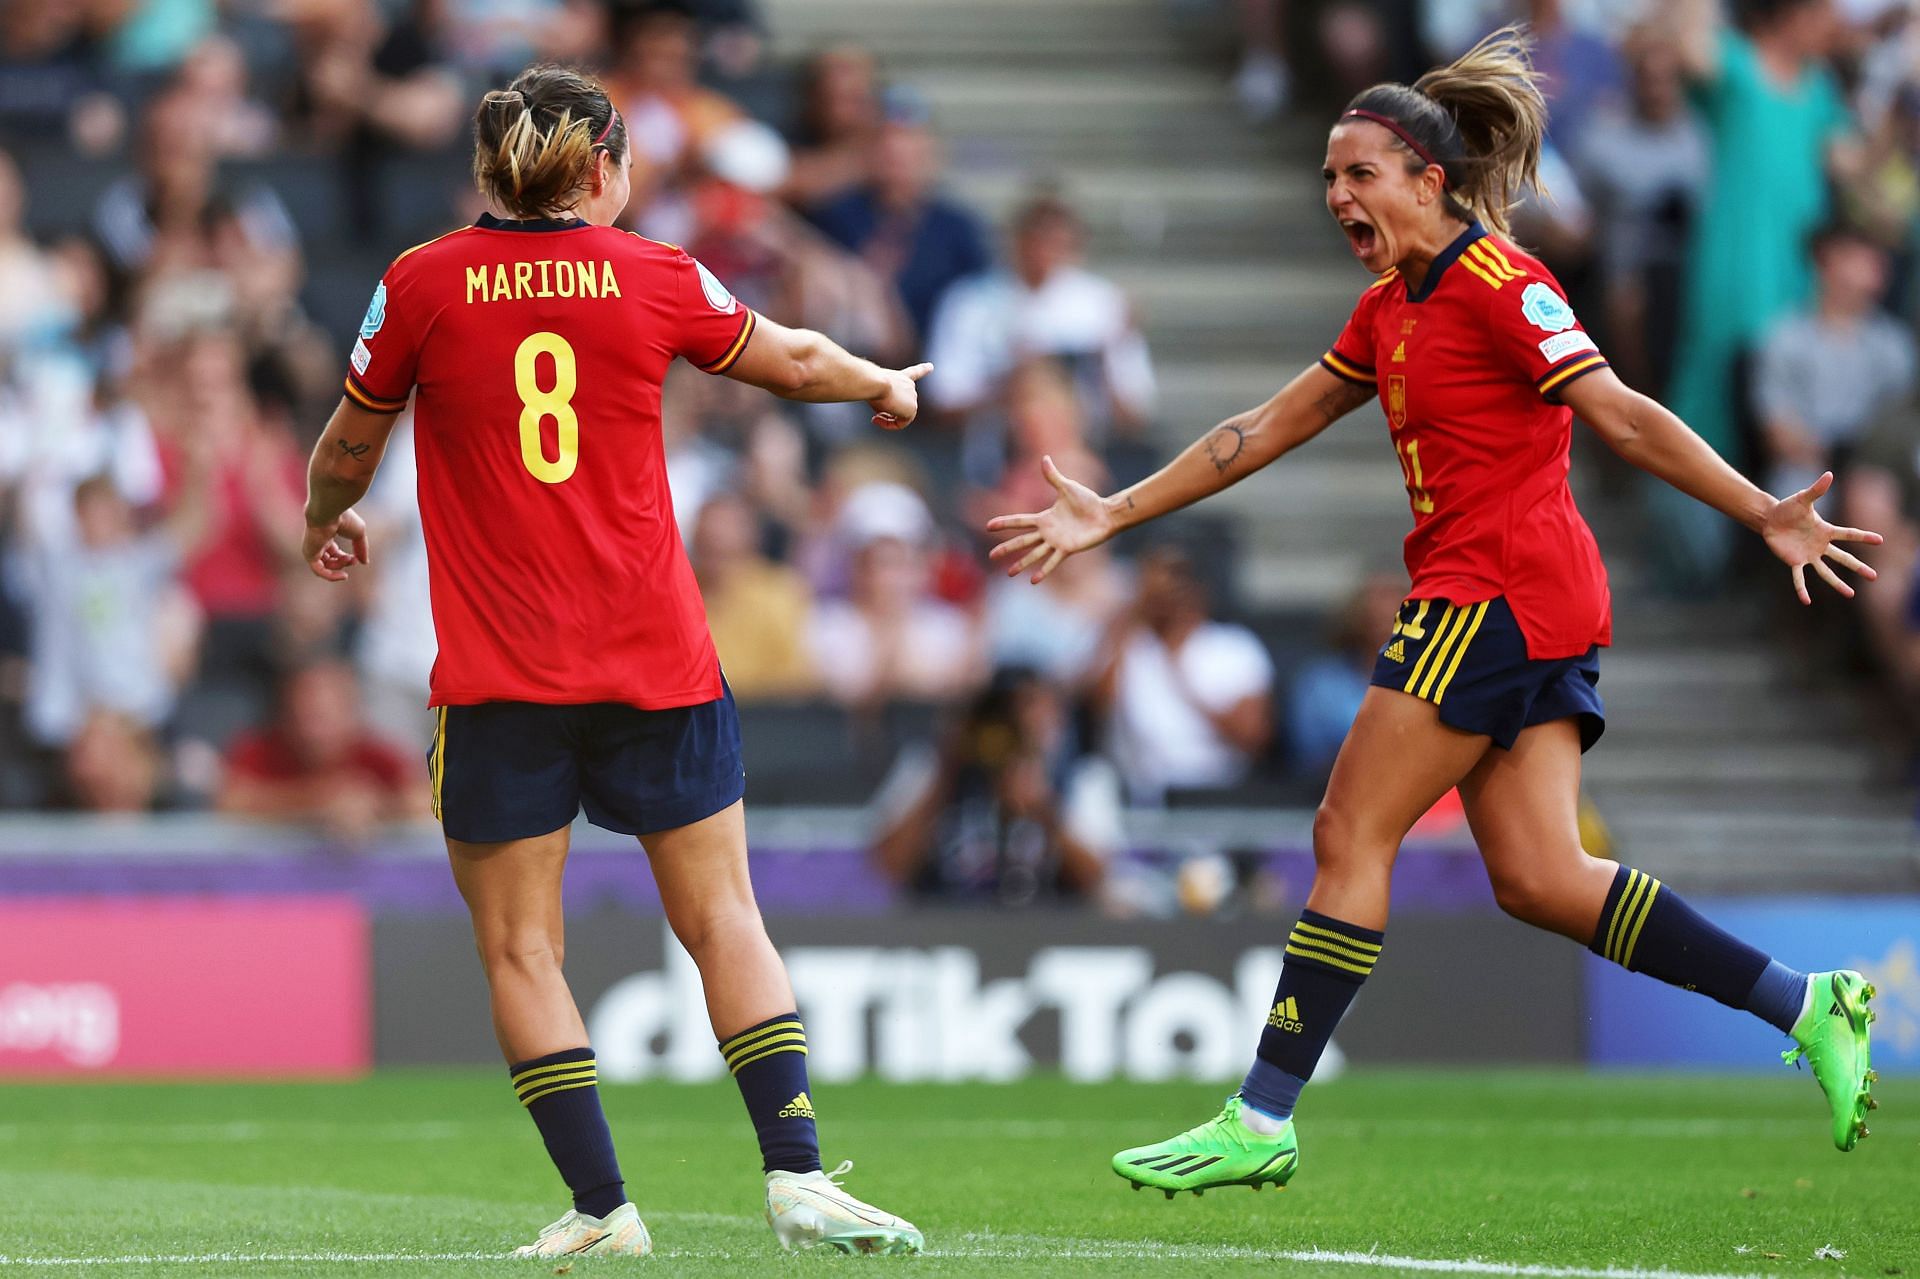 Spain take on Germany this week